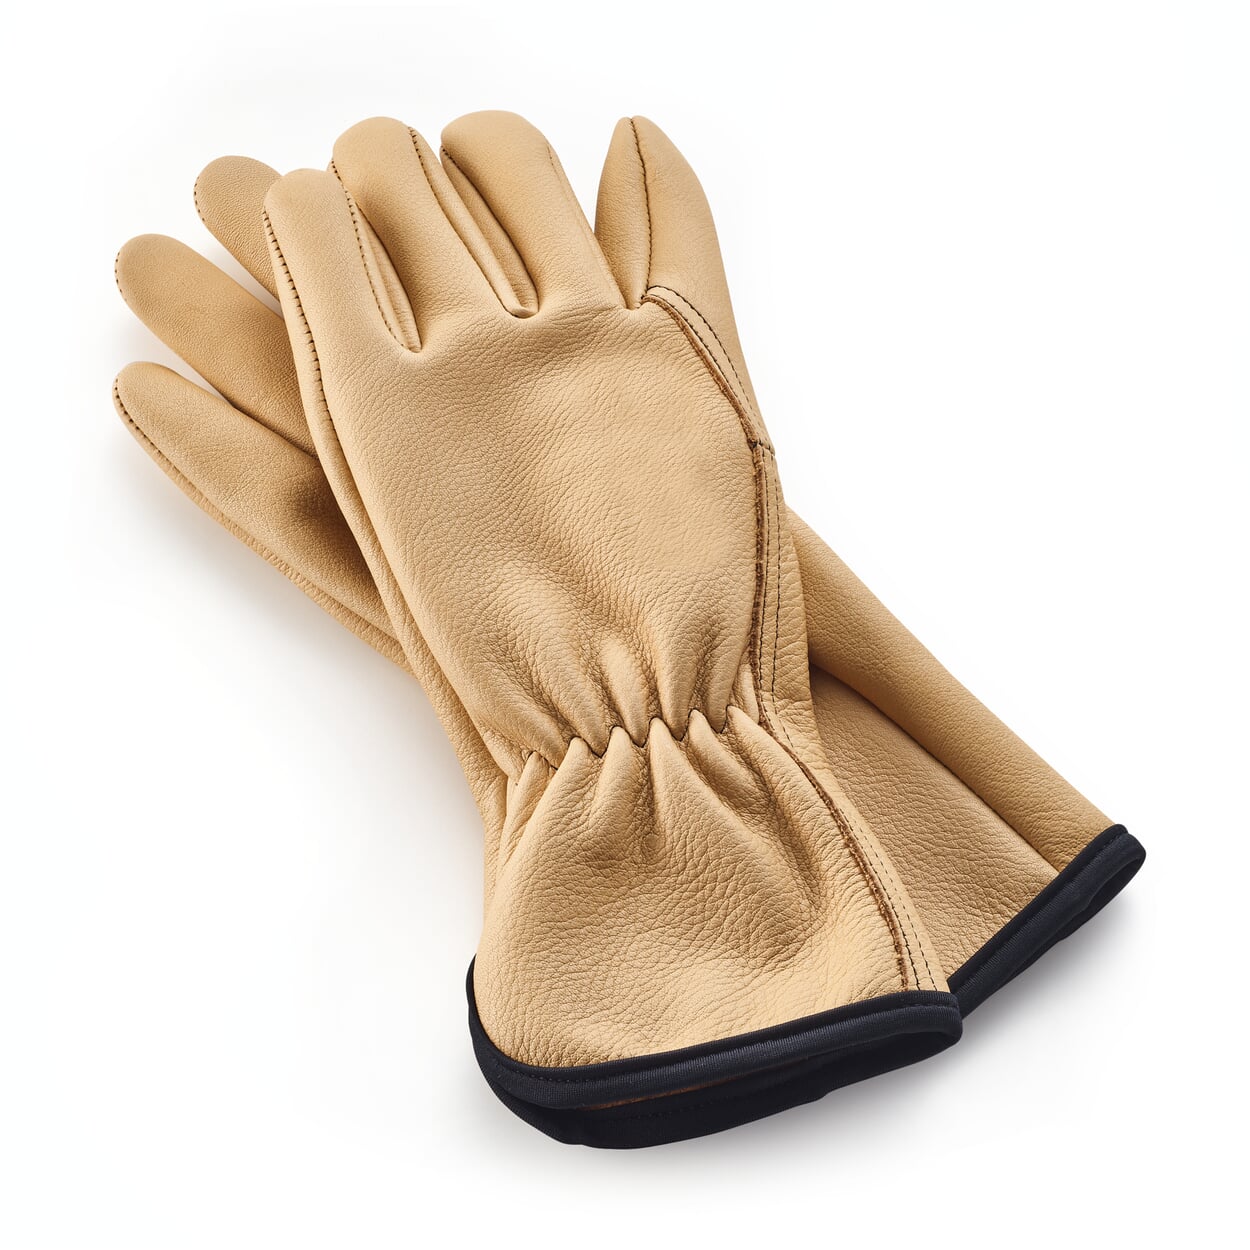 Garden glove leather